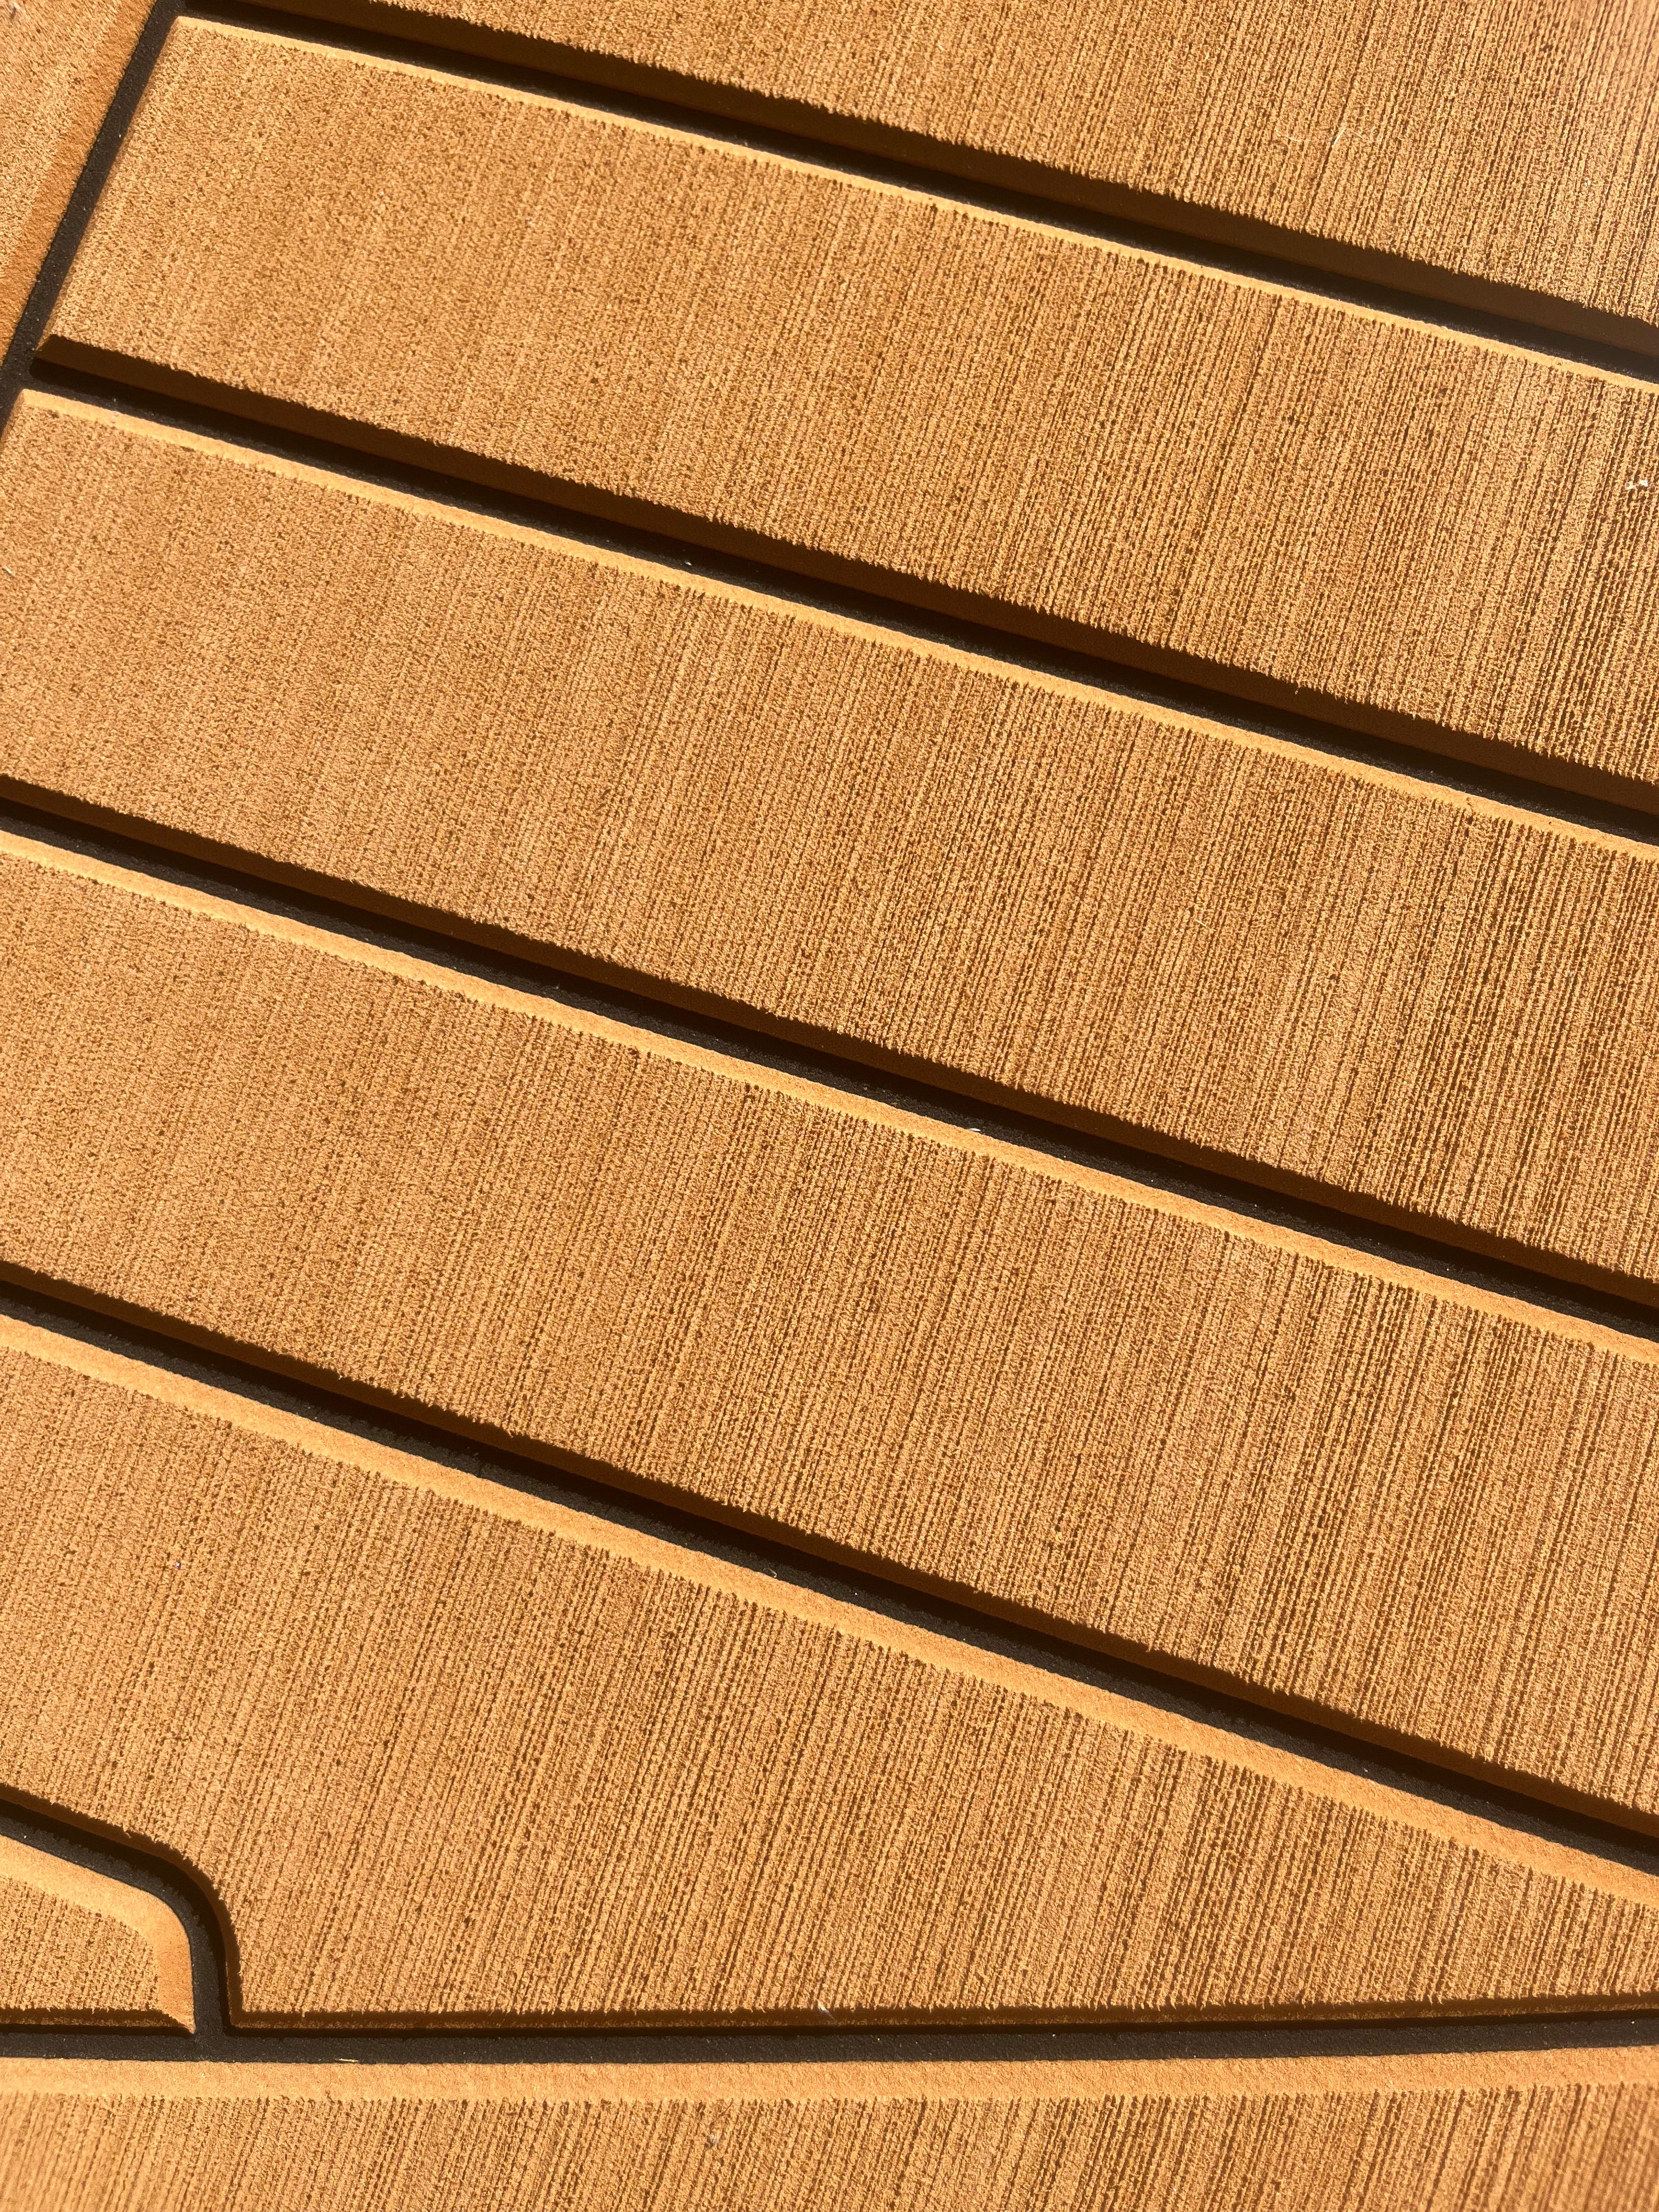 Excel_Leisure_Flooring-Wood